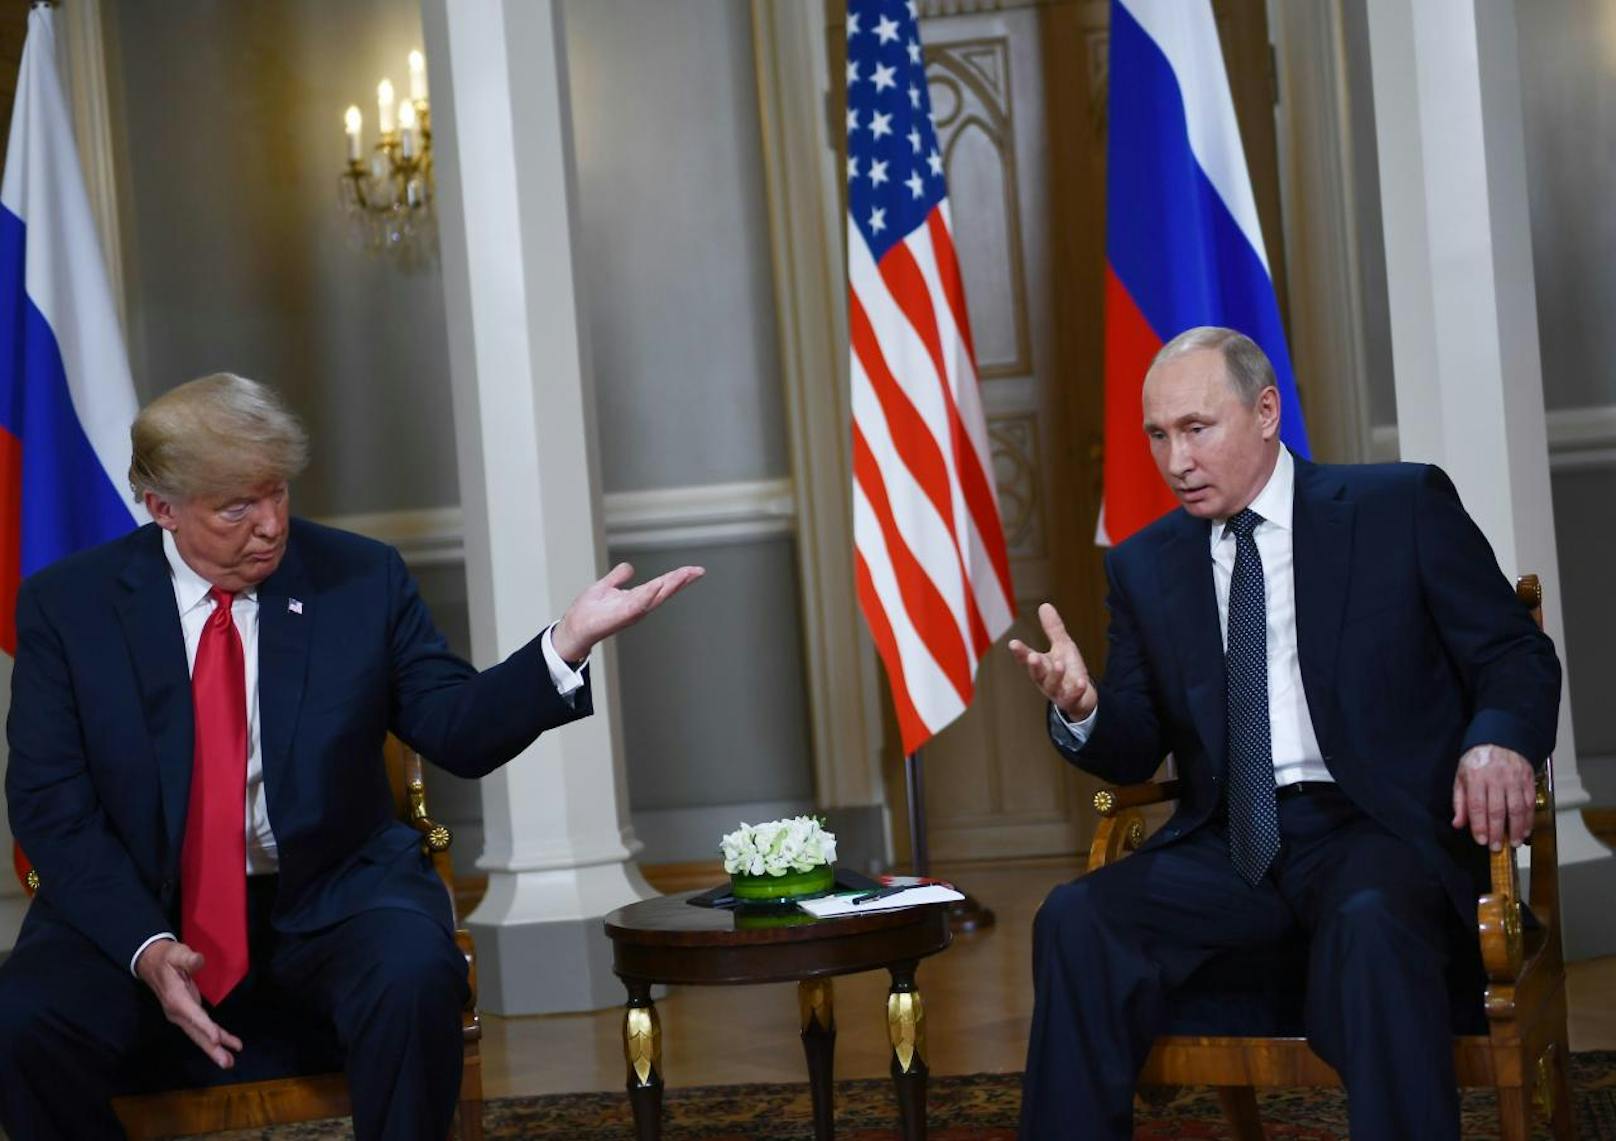 Trump meinte, sich mit Russland zu verstehen sei "eine gute Sache, keine schlechte". An besseren Beziehungen wolle man nun arbeiten.